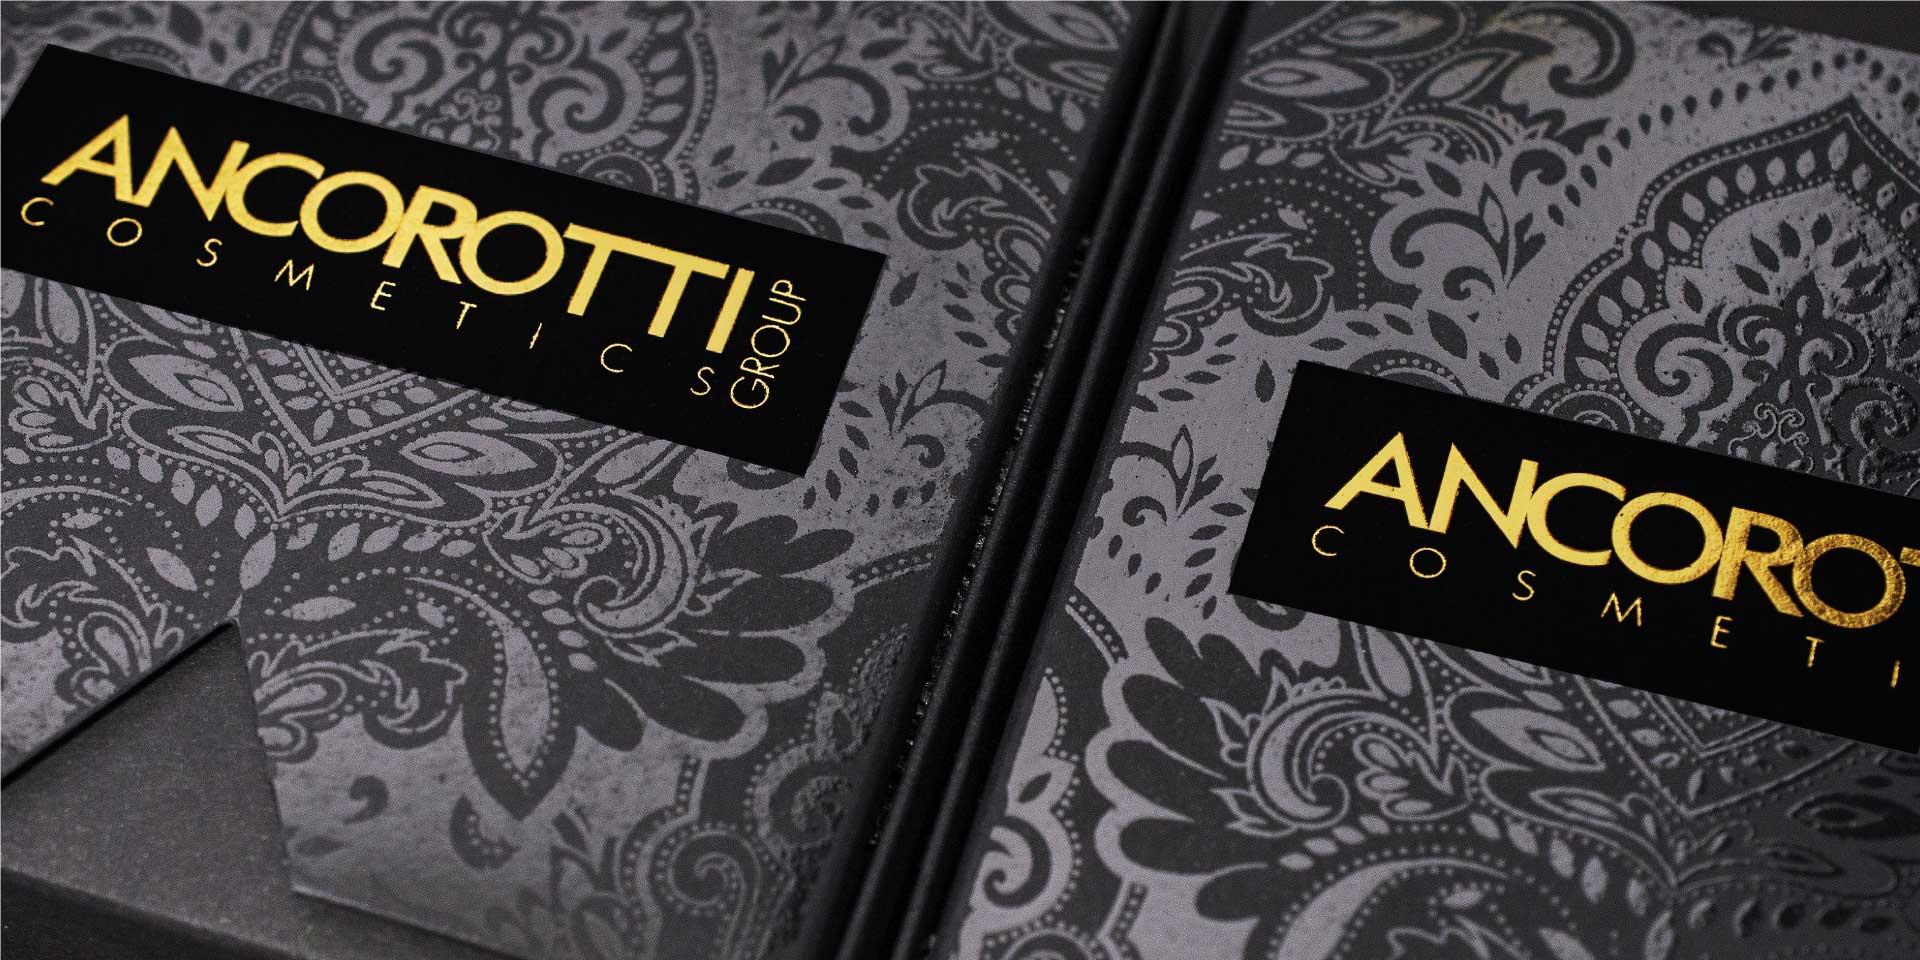 意大利化妆品代工企业 Ancorotti 扩建工厂，新增香水生产业务